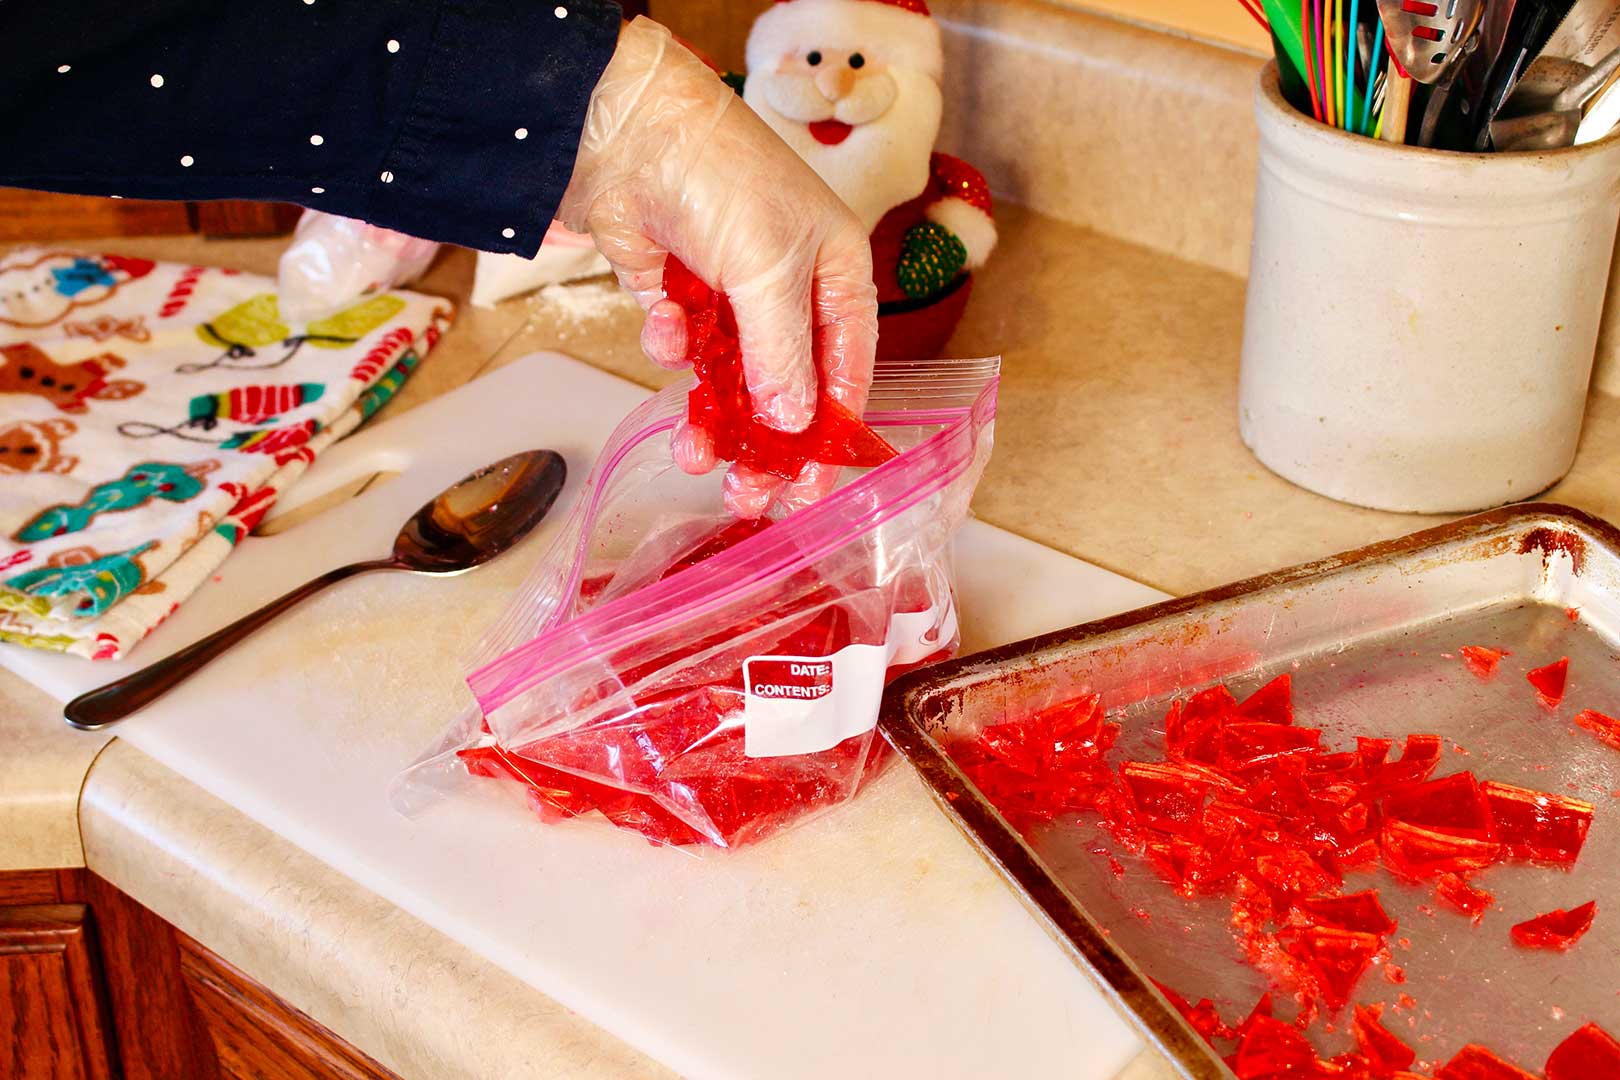 Hand placing broken pieces of homemade cinnamon candies in a ziplock bag.